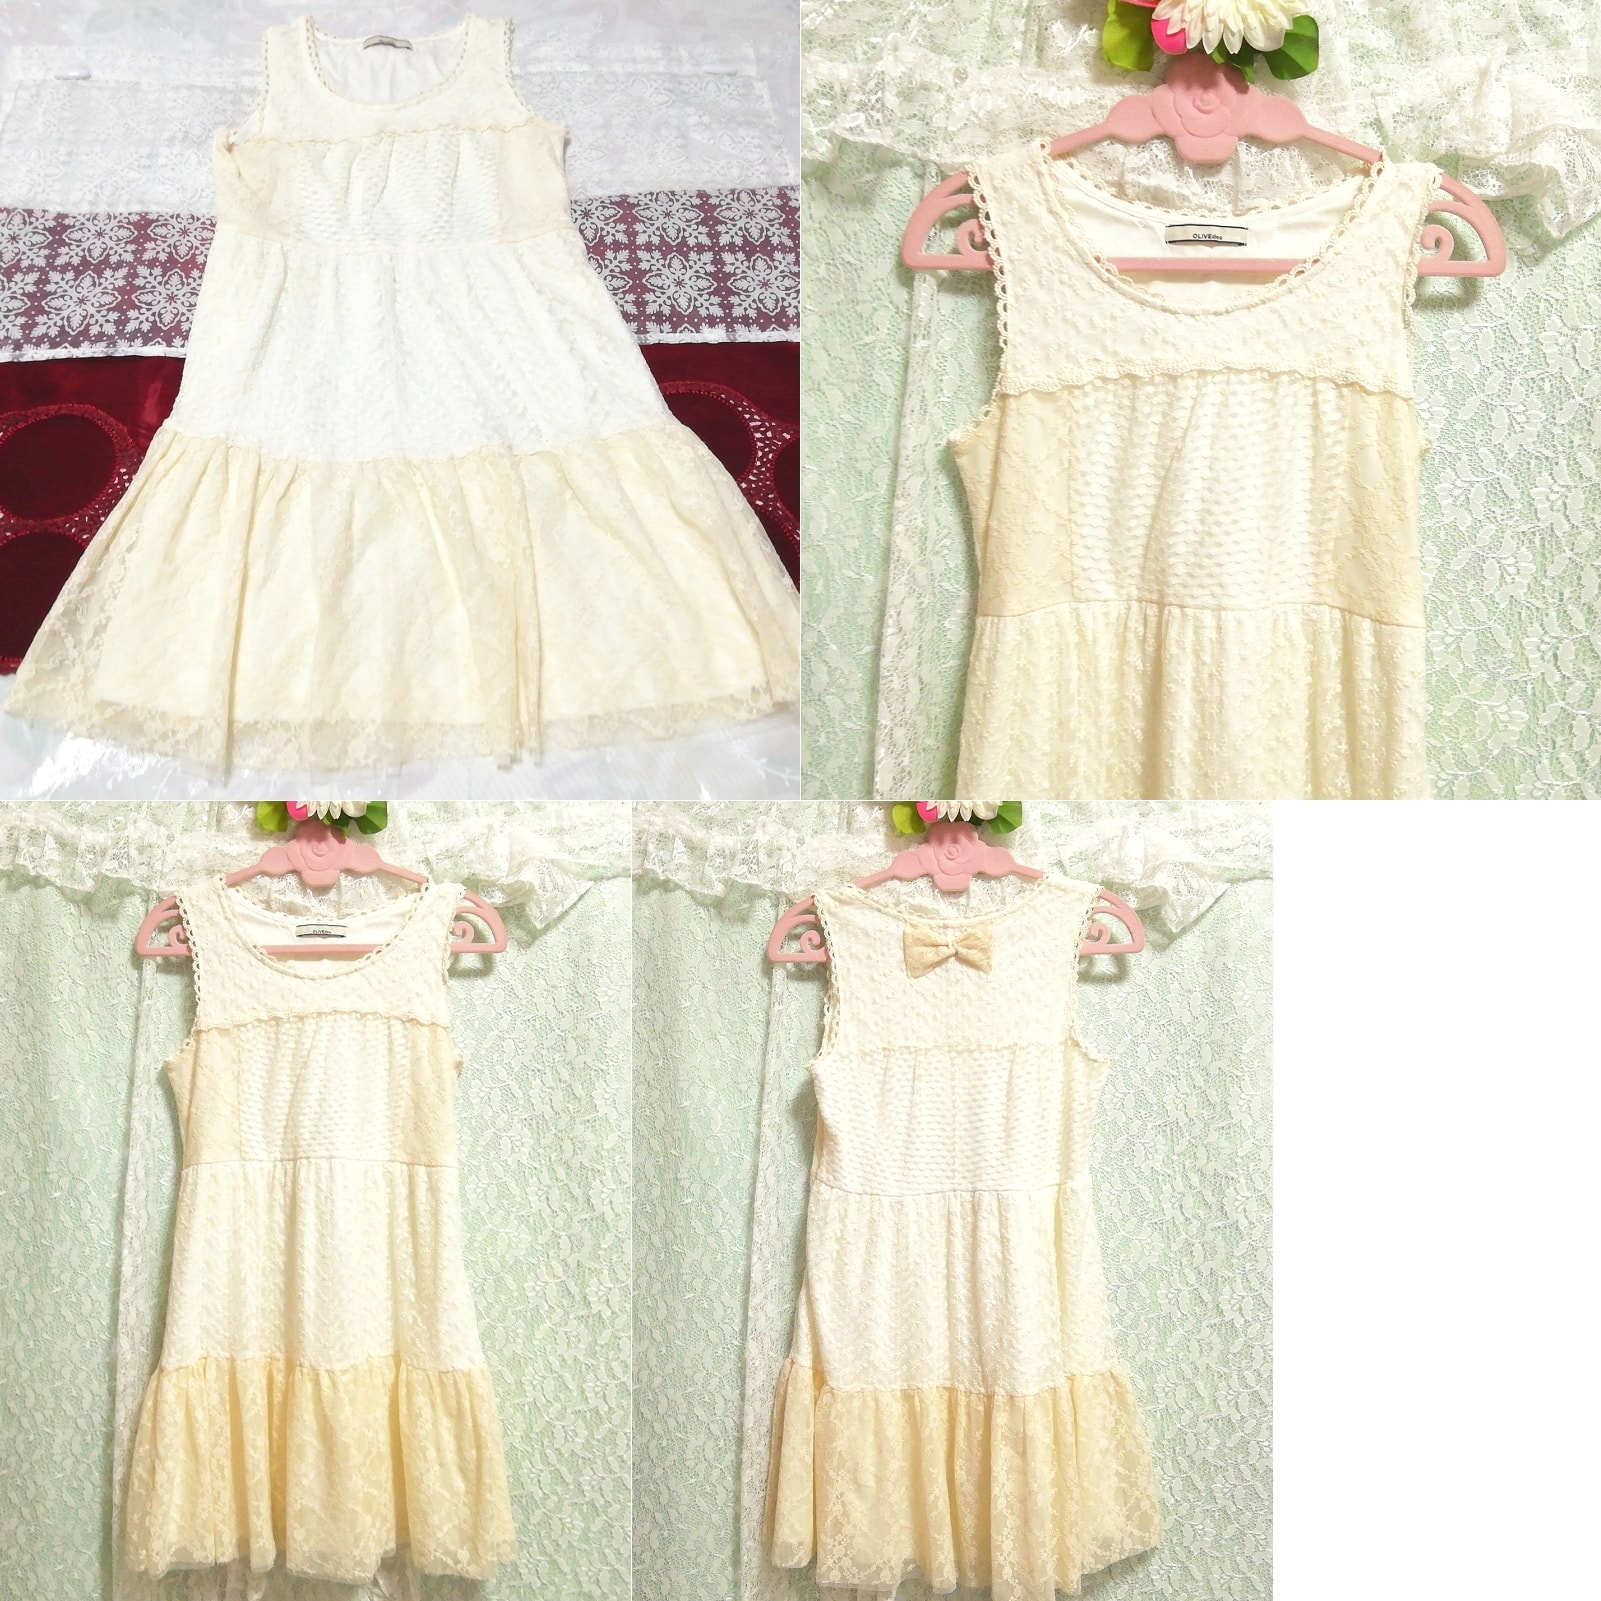 Camisón negligee sin mangas con cinta de encaje de lino blanco floral, falda hasta la rodilla, talla m